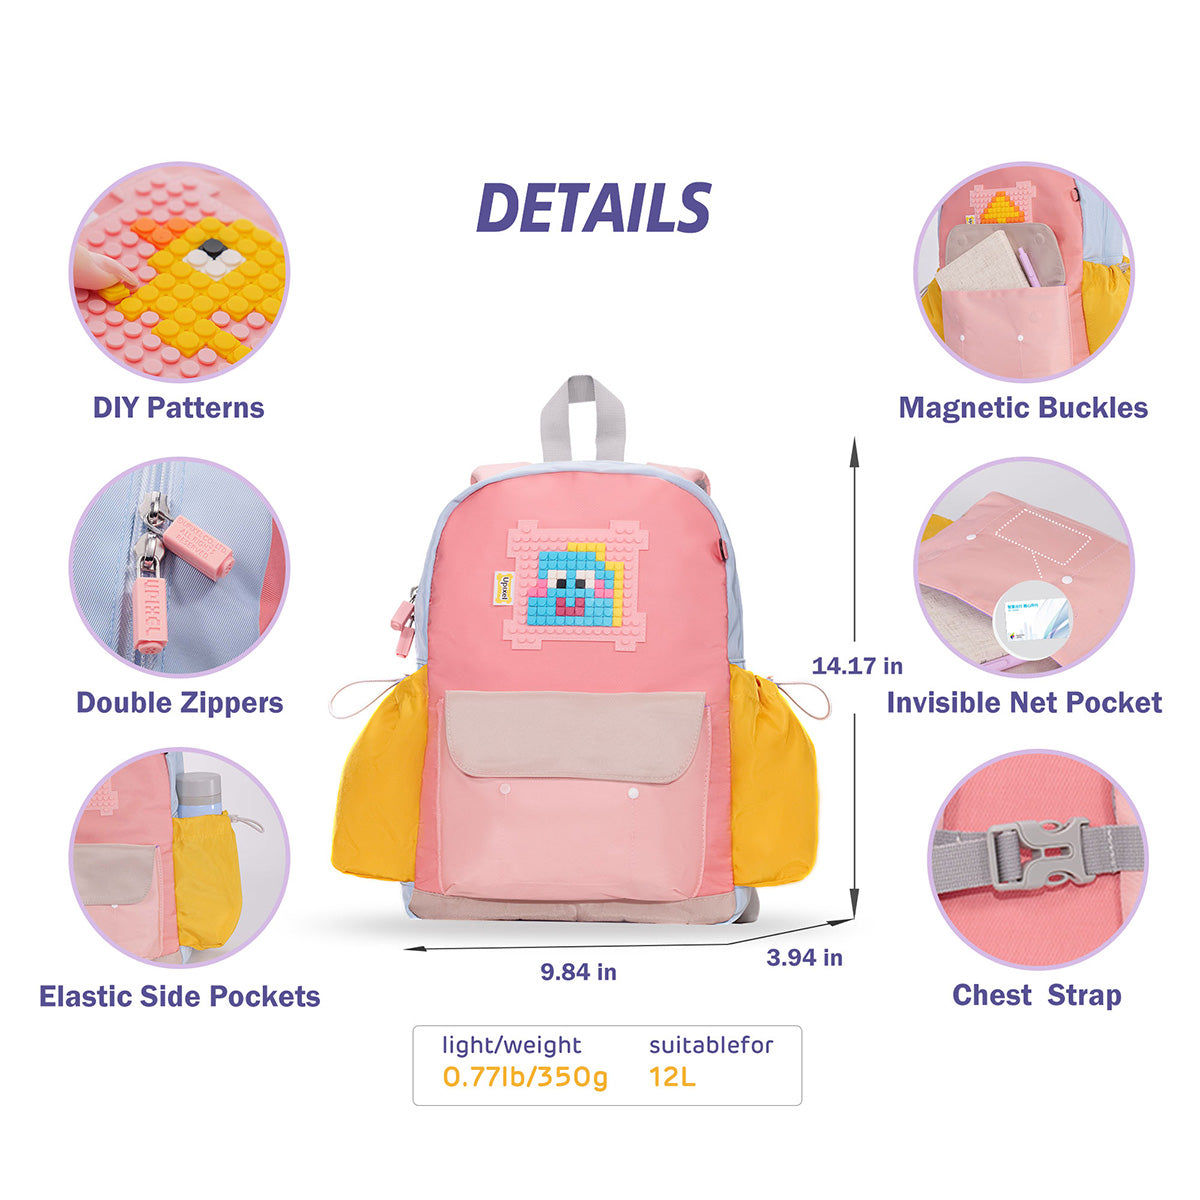 UPIXEL ACE Kids DIY Backpack Pink Color for Girls Age 3-8